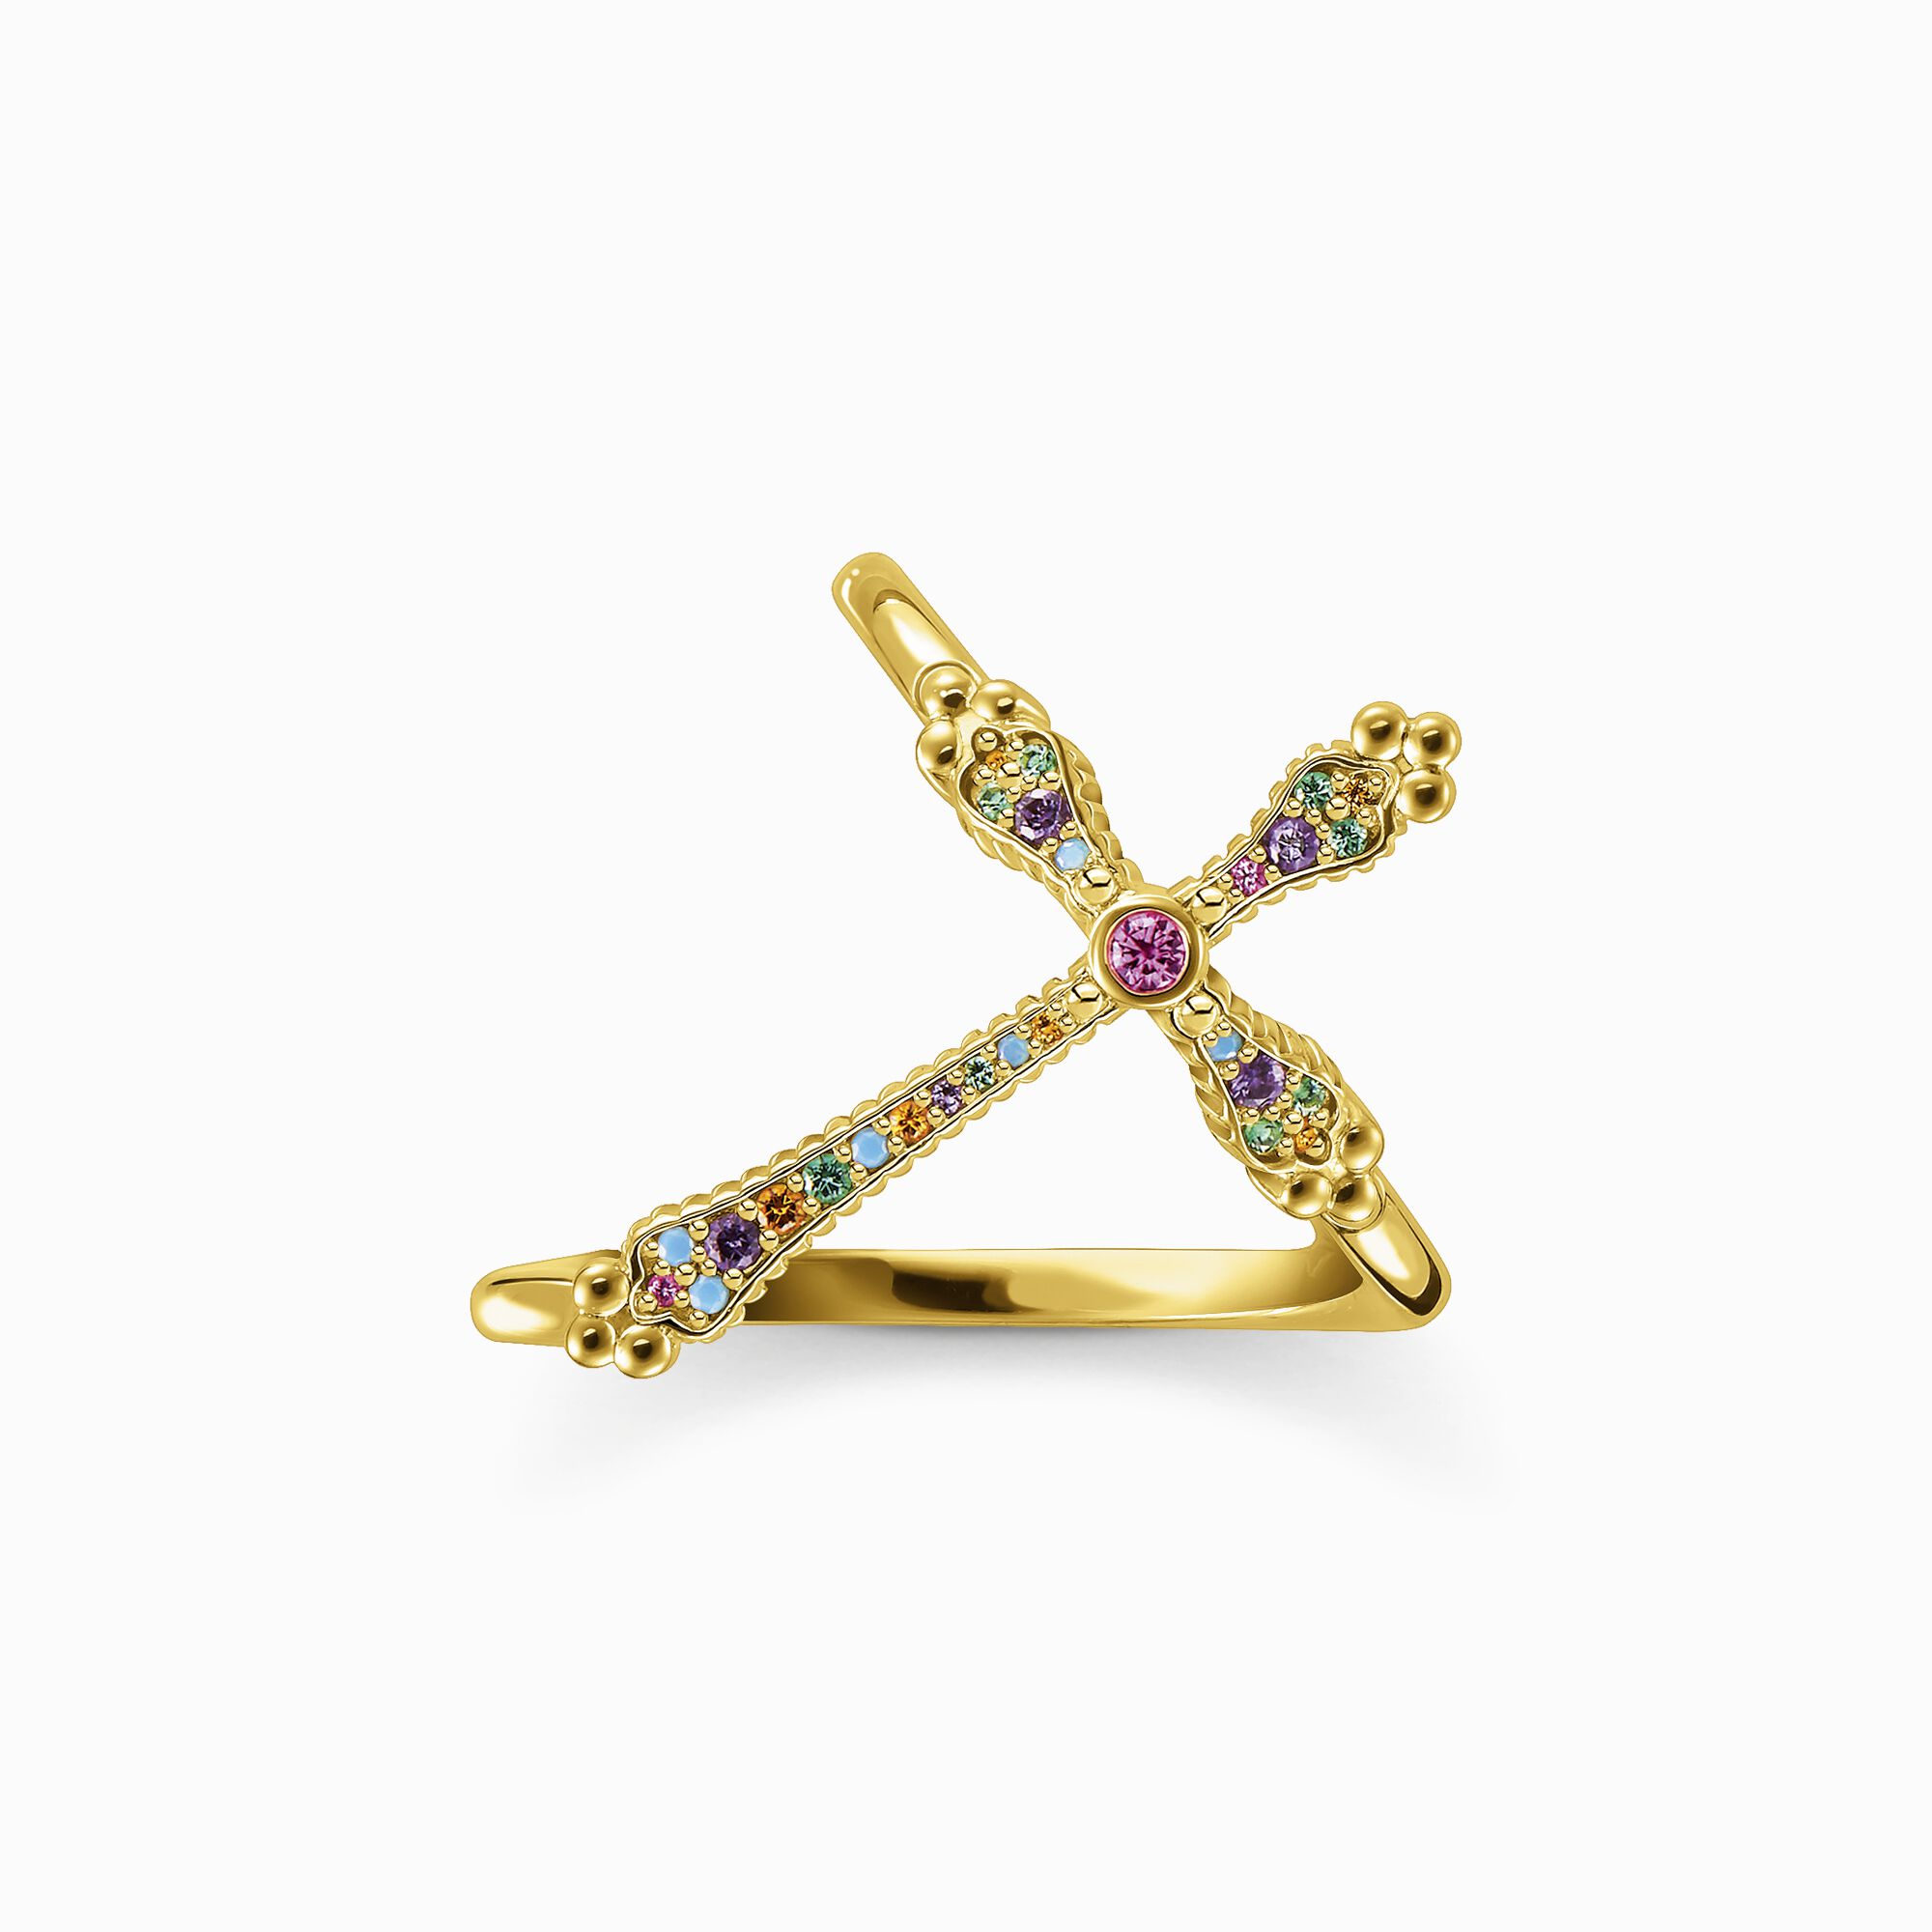 Ring Royalty Kreuz gold farbige Steine aus der  Kollektion im Online Shop von THOMAS SABO